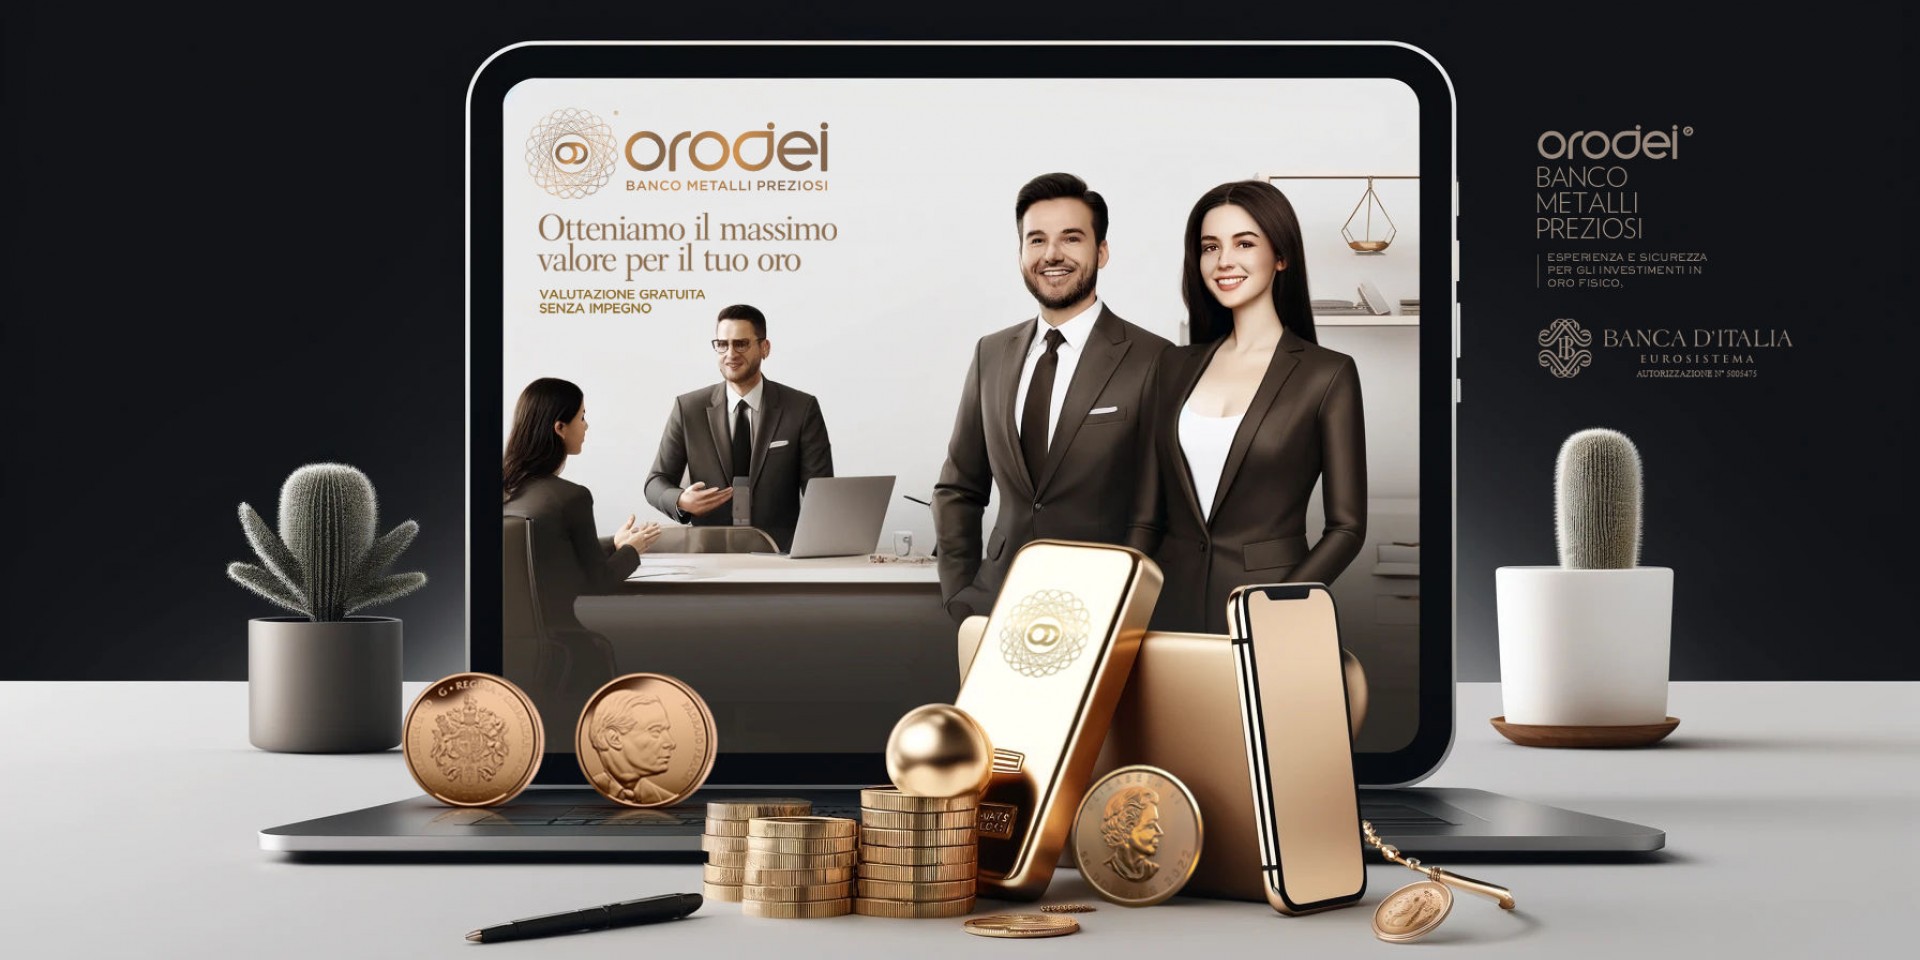 Orodei Banco Metalli Preziosi: Opportunità di Vendita per il Tuo Oro e Argento